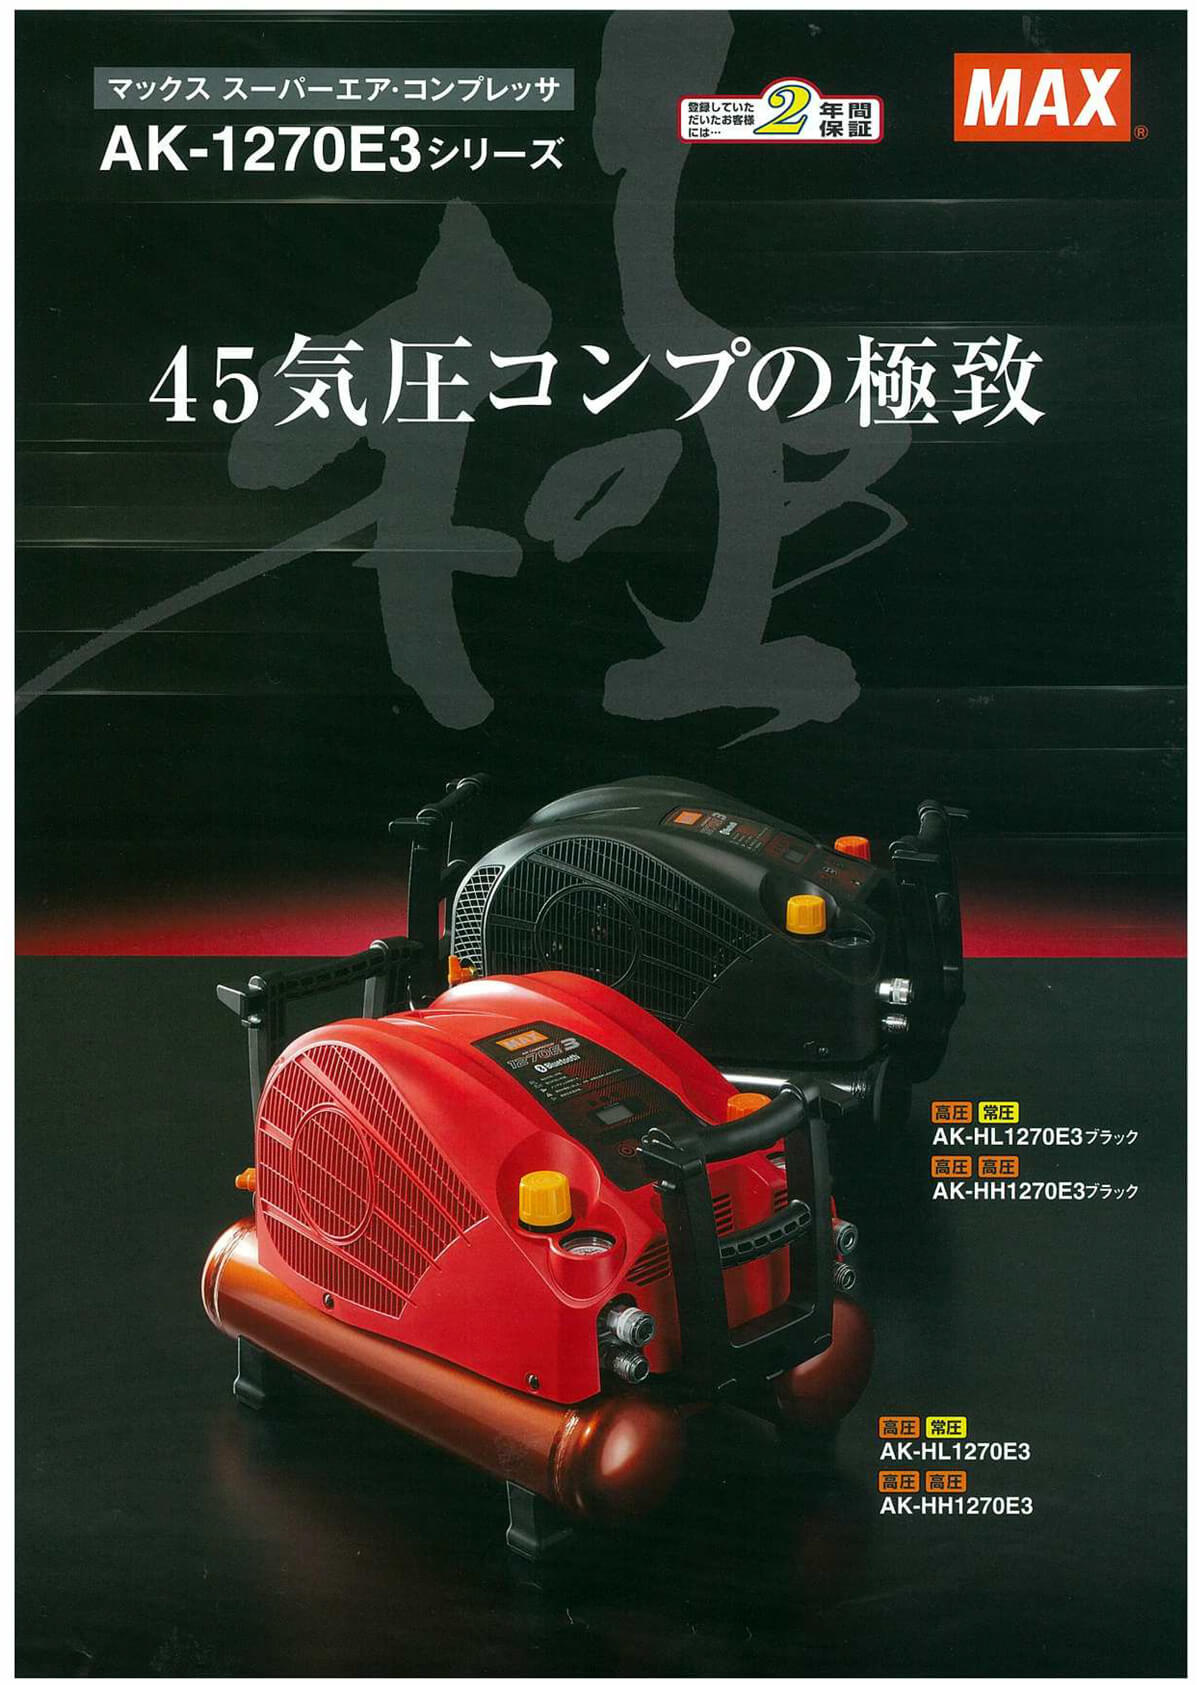 MAX AK-HL1270E3(27L) コンプレッサー ウエダ金物【公式サイト】